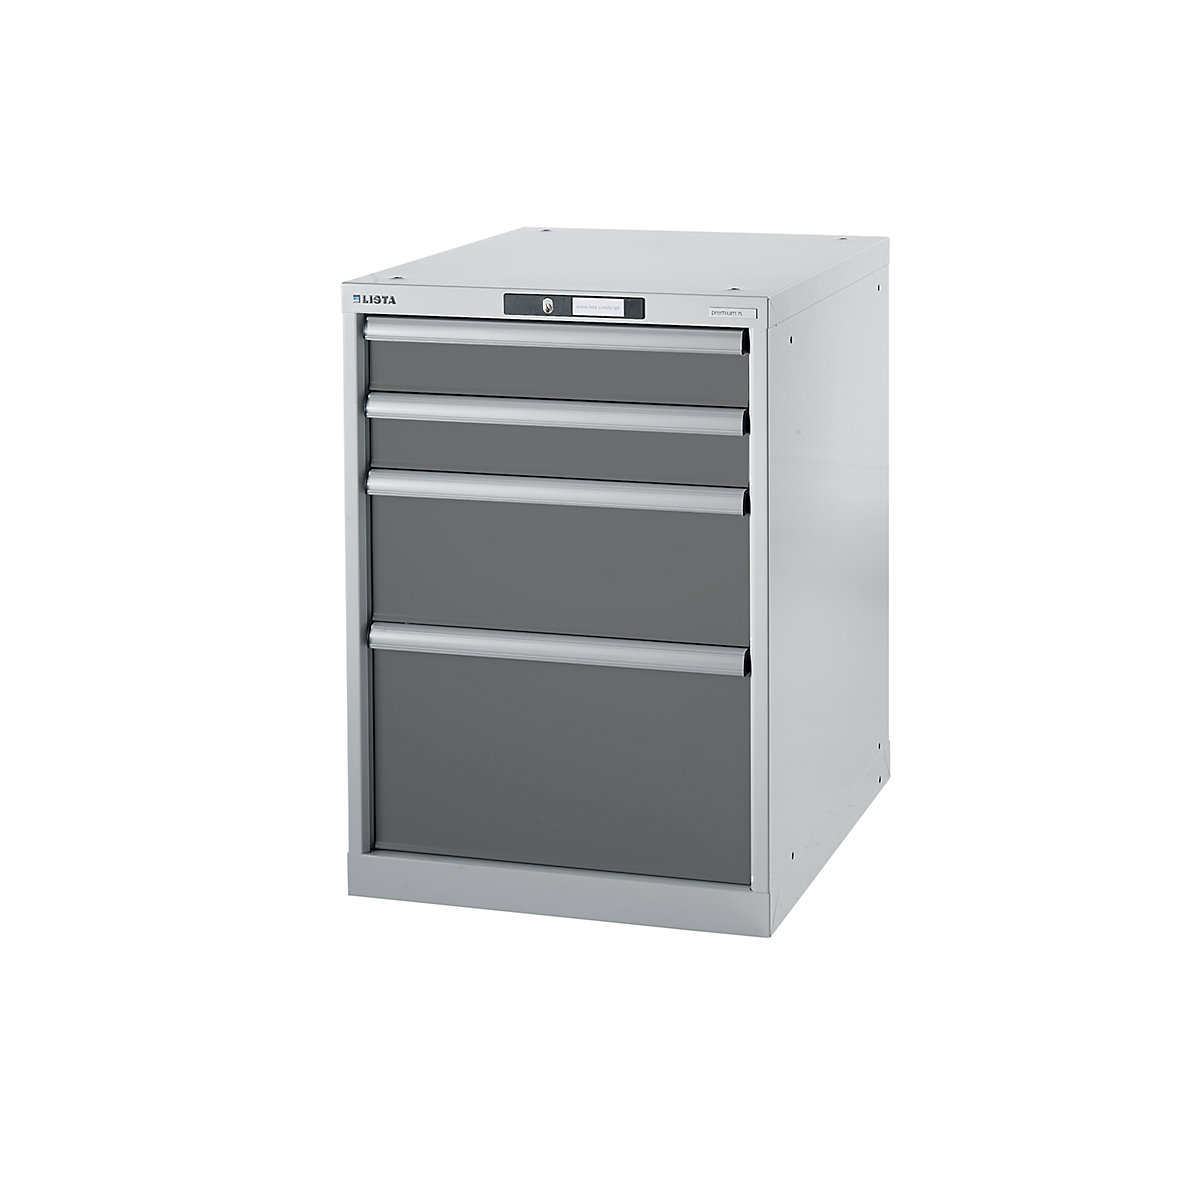 Sistem modular pentru banc de lucru, dulap inferior – LISTA, înălțime 800 mm, 4 sertare, gri metalizat-7